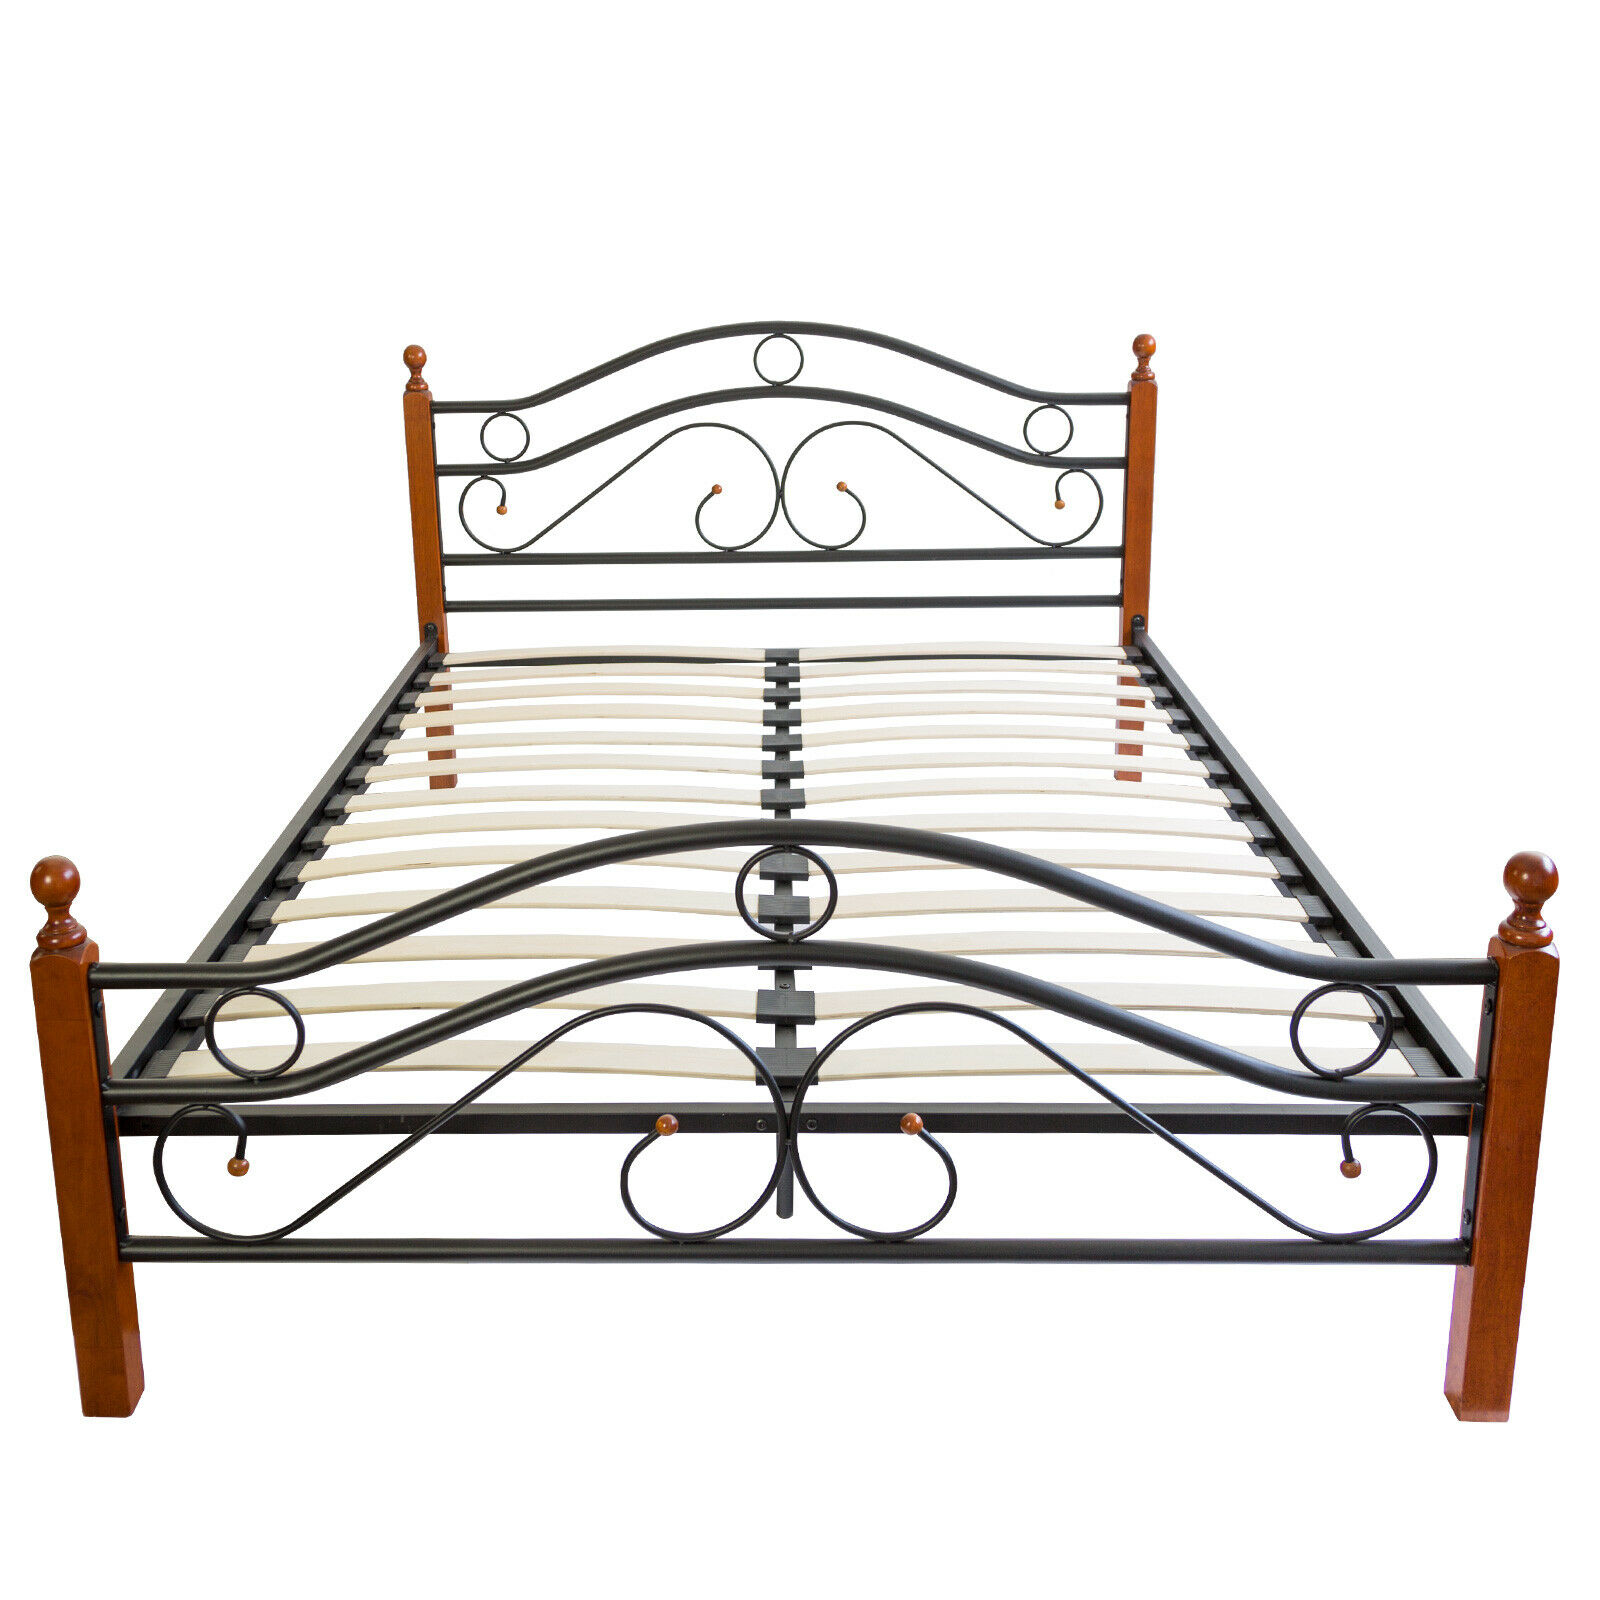 Metal Bed 180 x 200 Bed Frame Double Bed Bed Frame + Slatted Base 803 Black